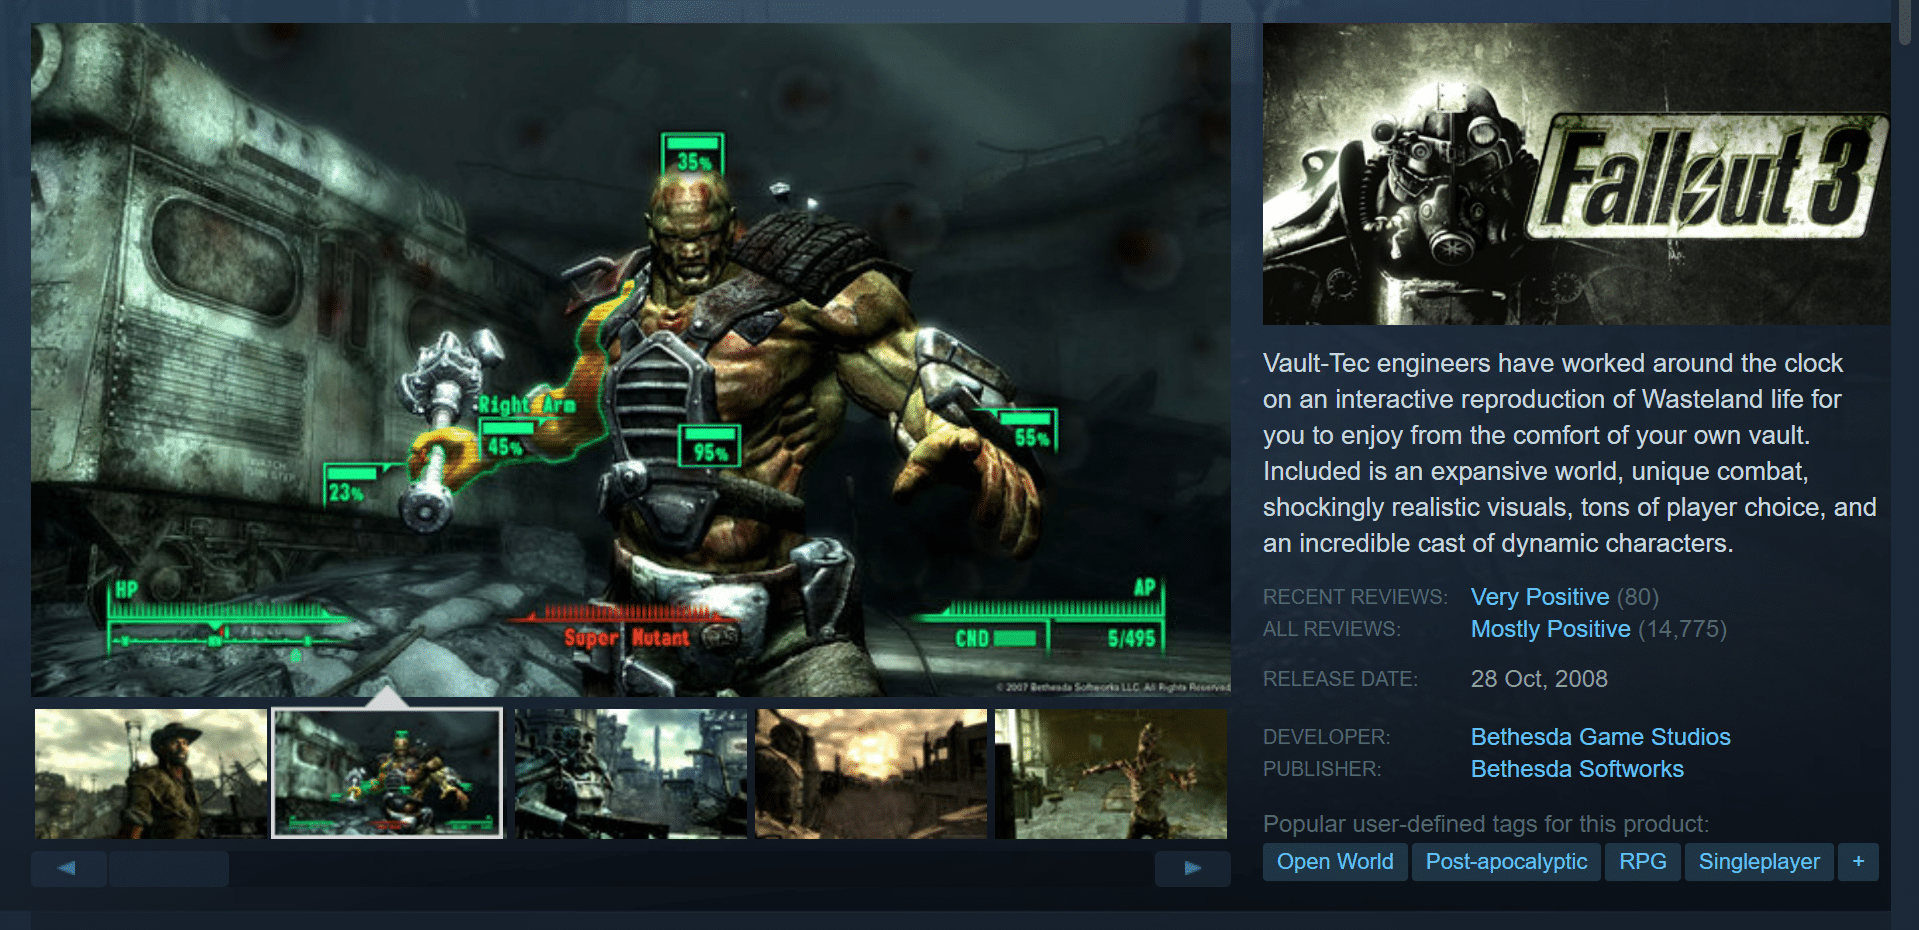 Fallout 3. ローエンド PC 向けの 36 のベスト オープン ワールド ゲーム